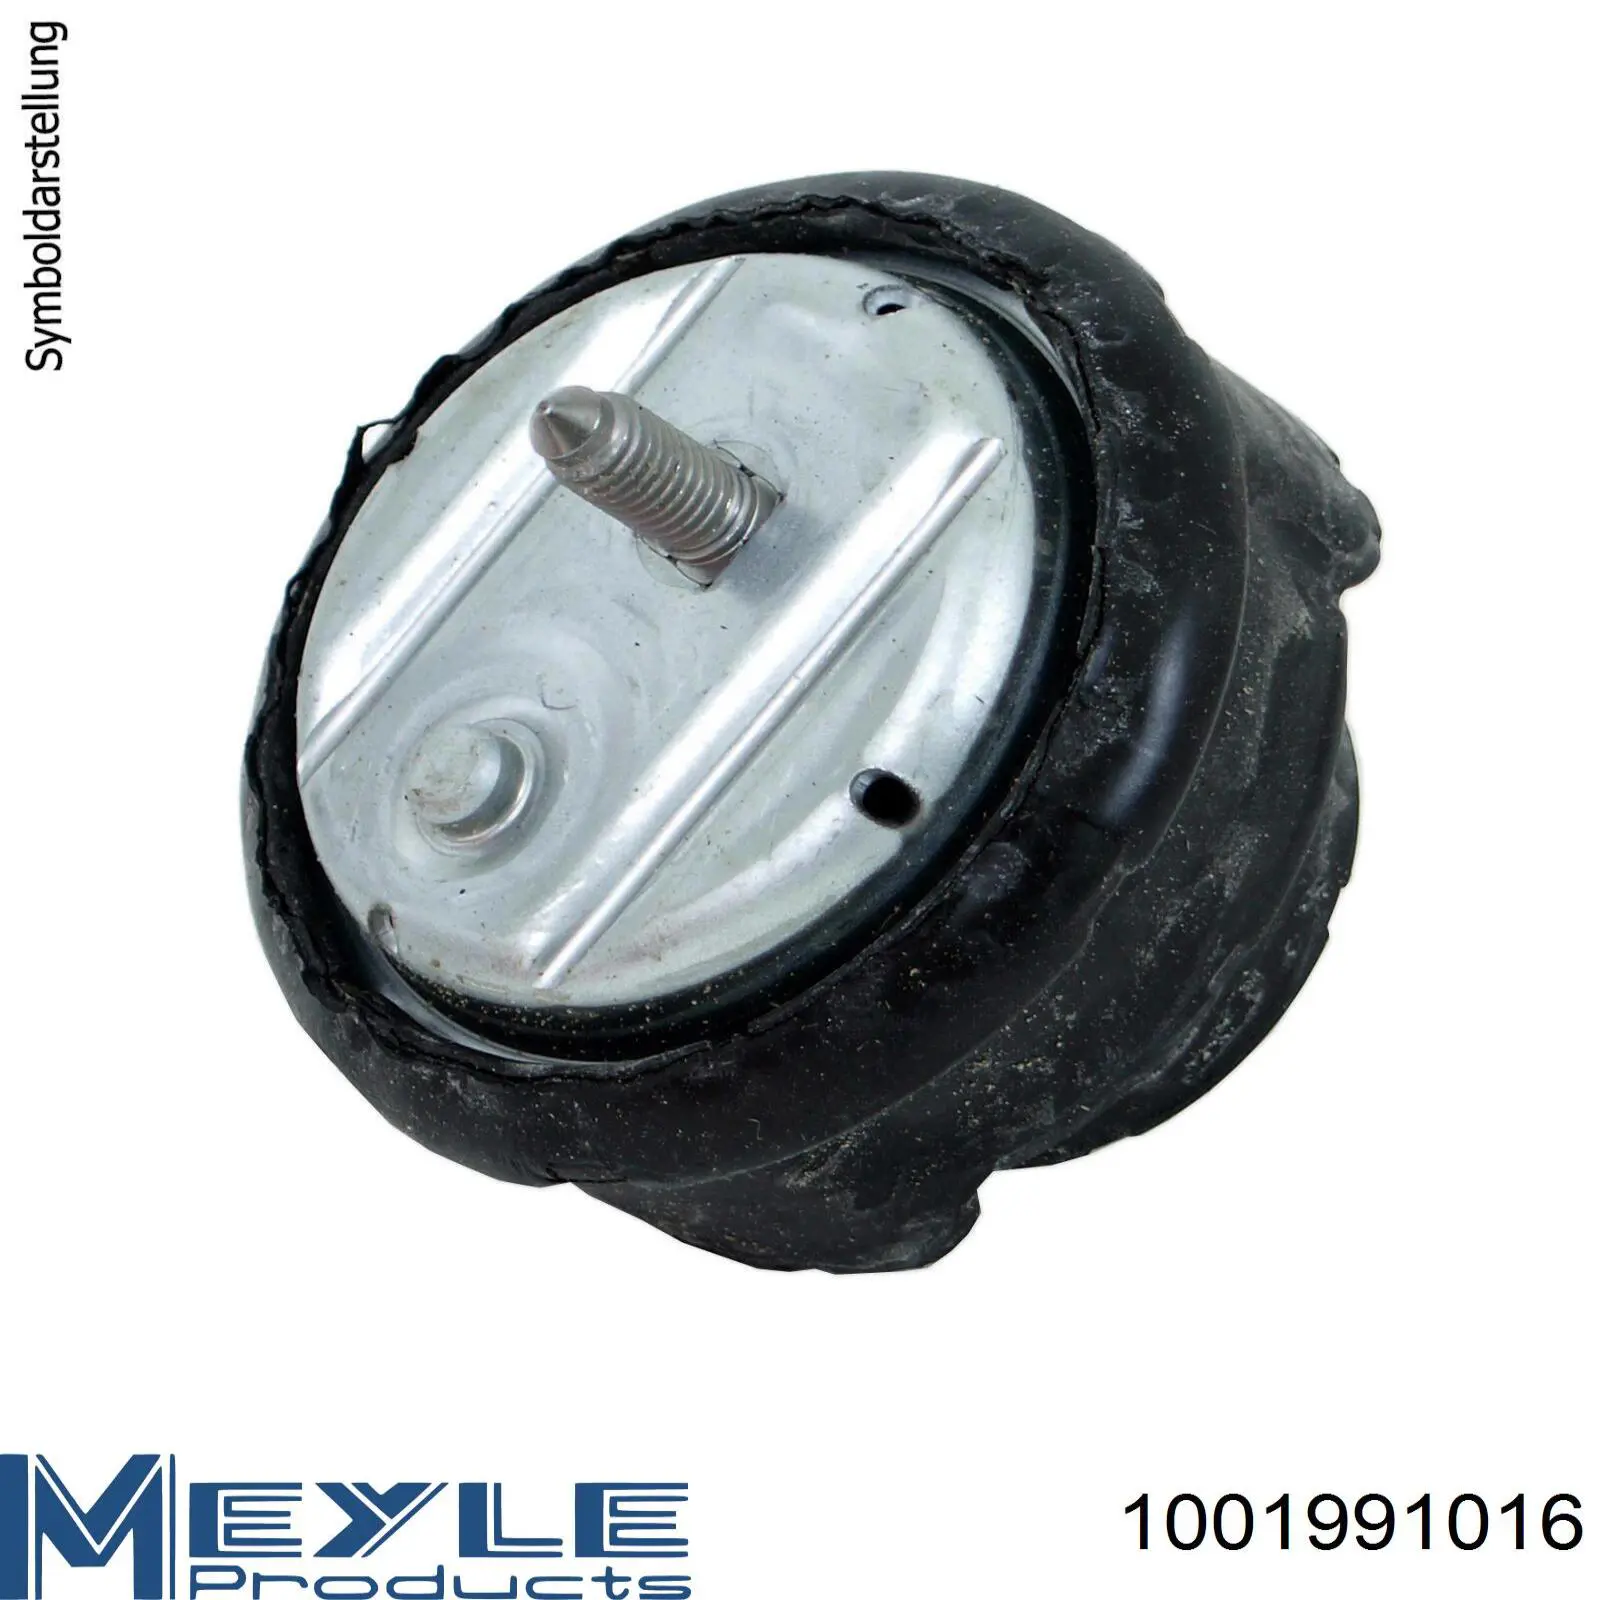 1001991016 Meyle coxim (suporte direito de motor)